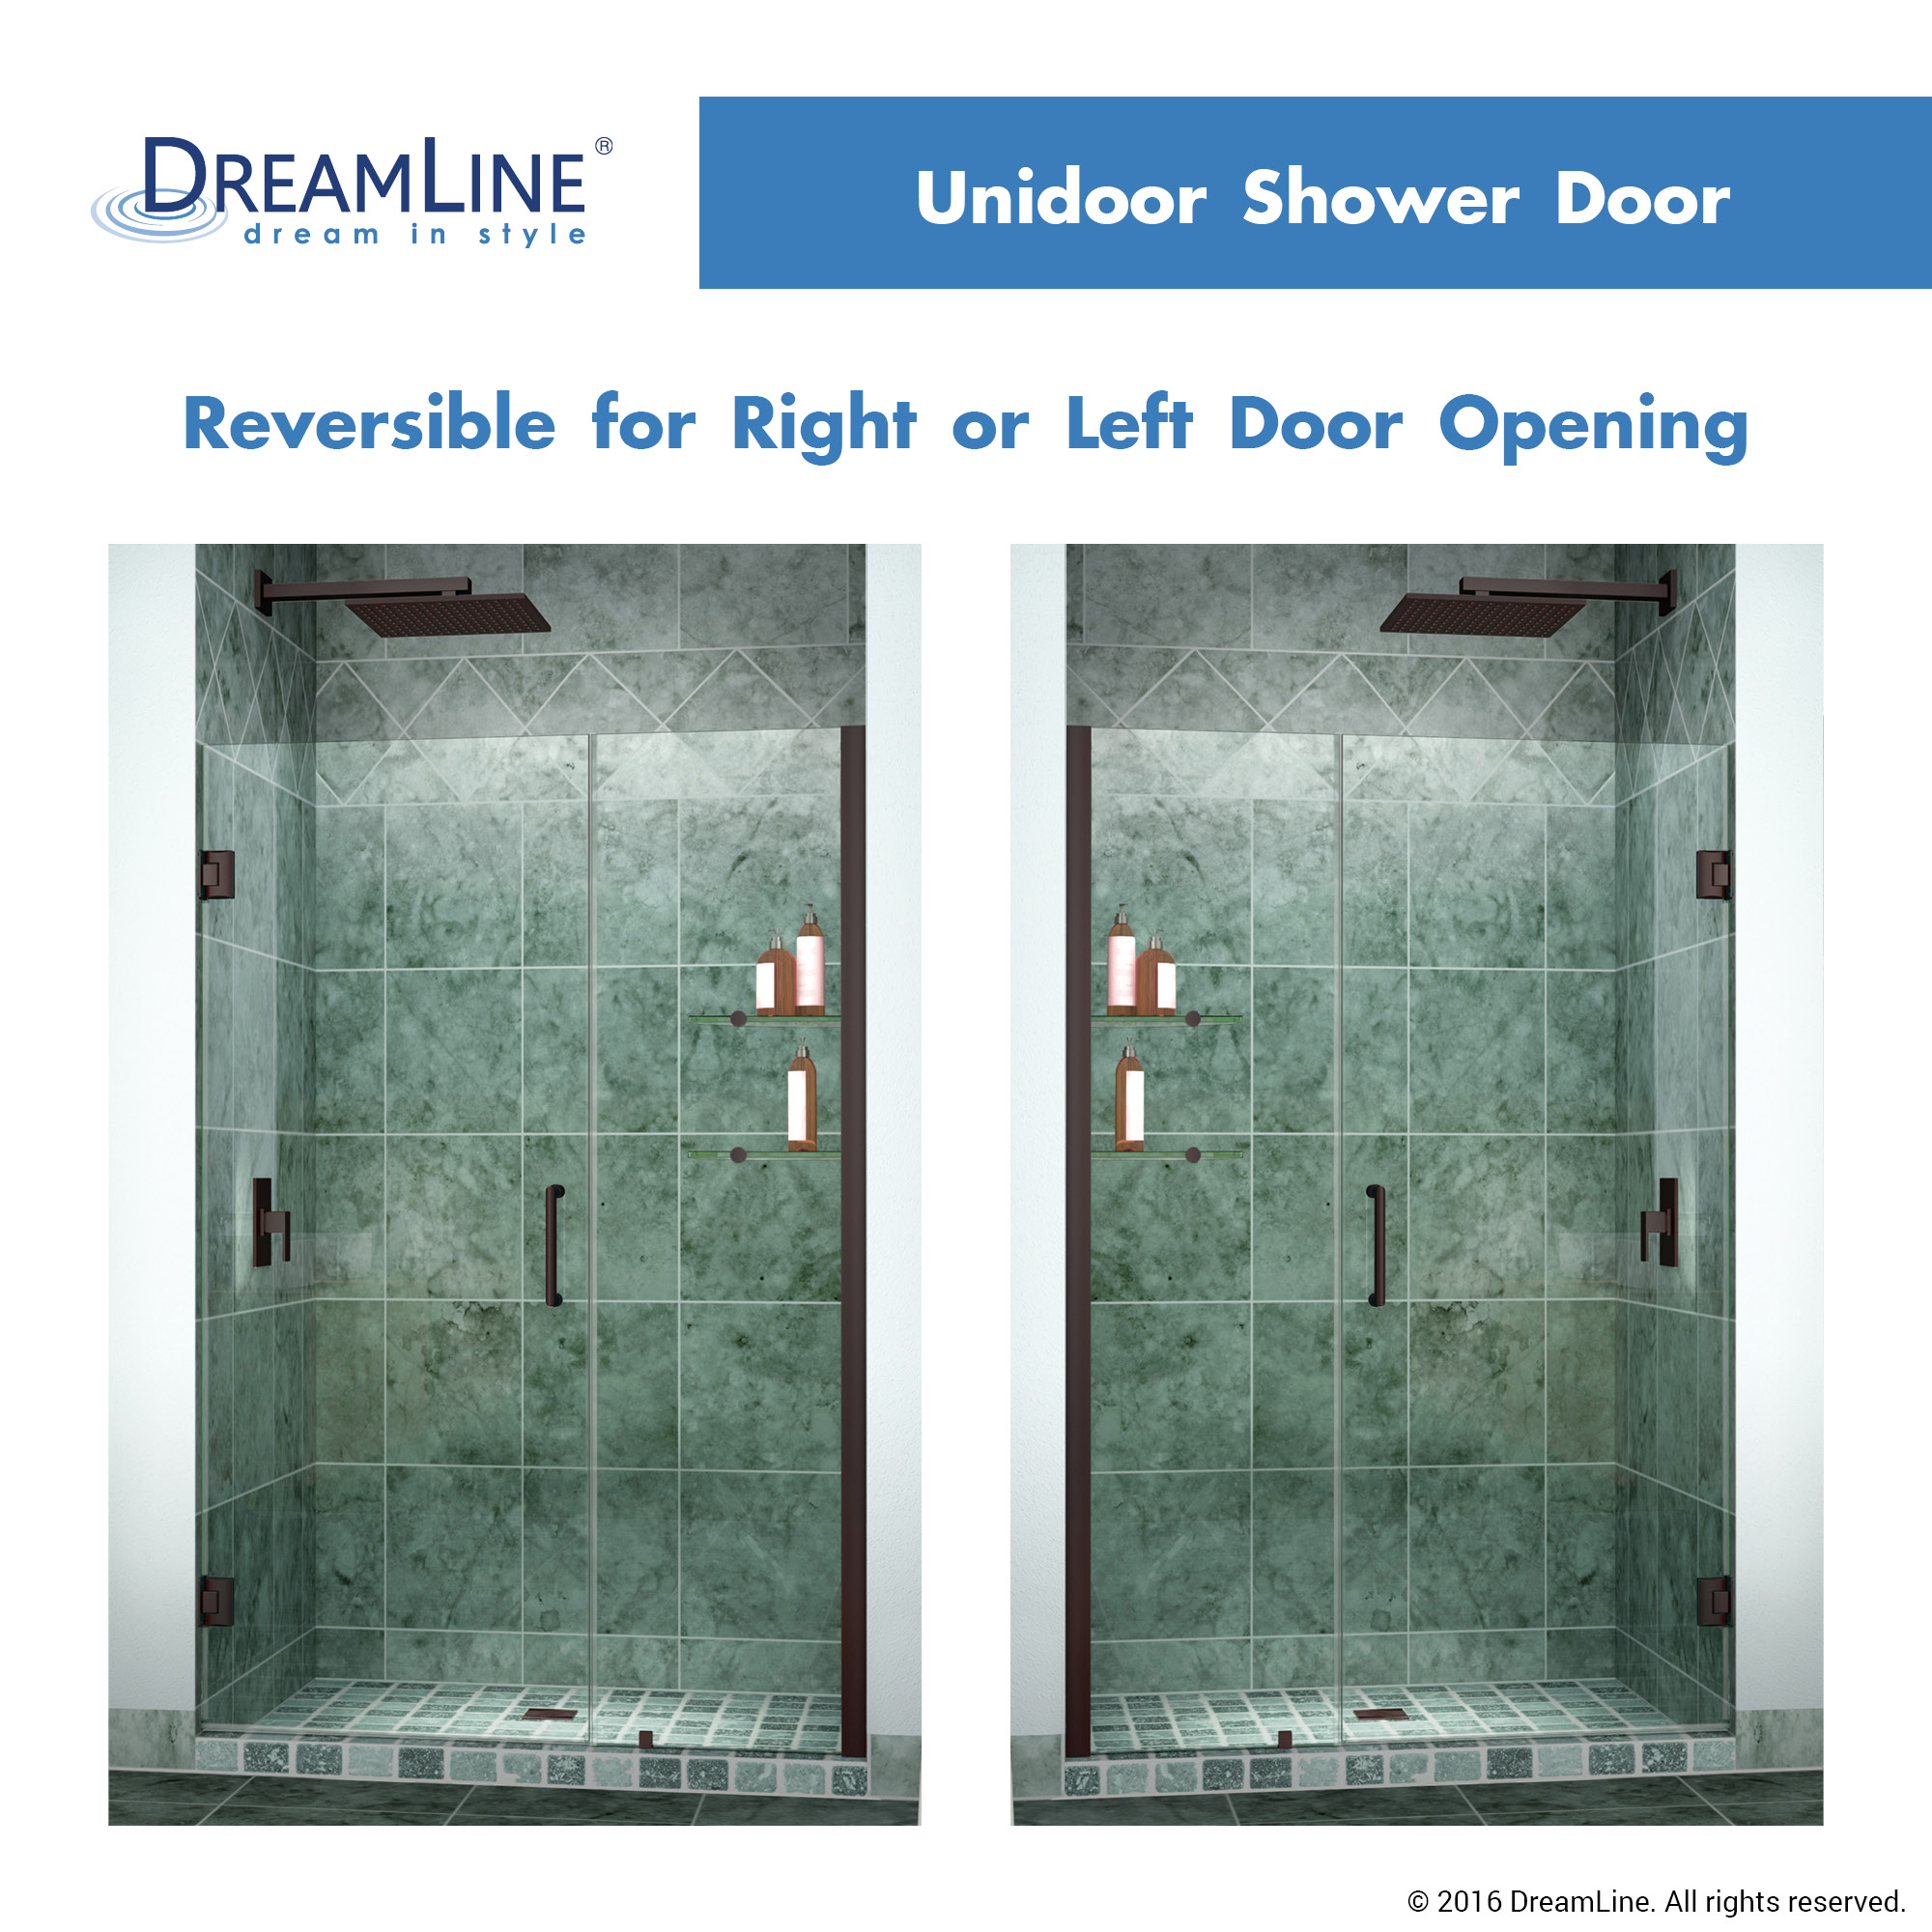 Dreamline SHDR-20457210S-06 Oil Rubbed Bronze 45-46" Shower Door W/ Shelves